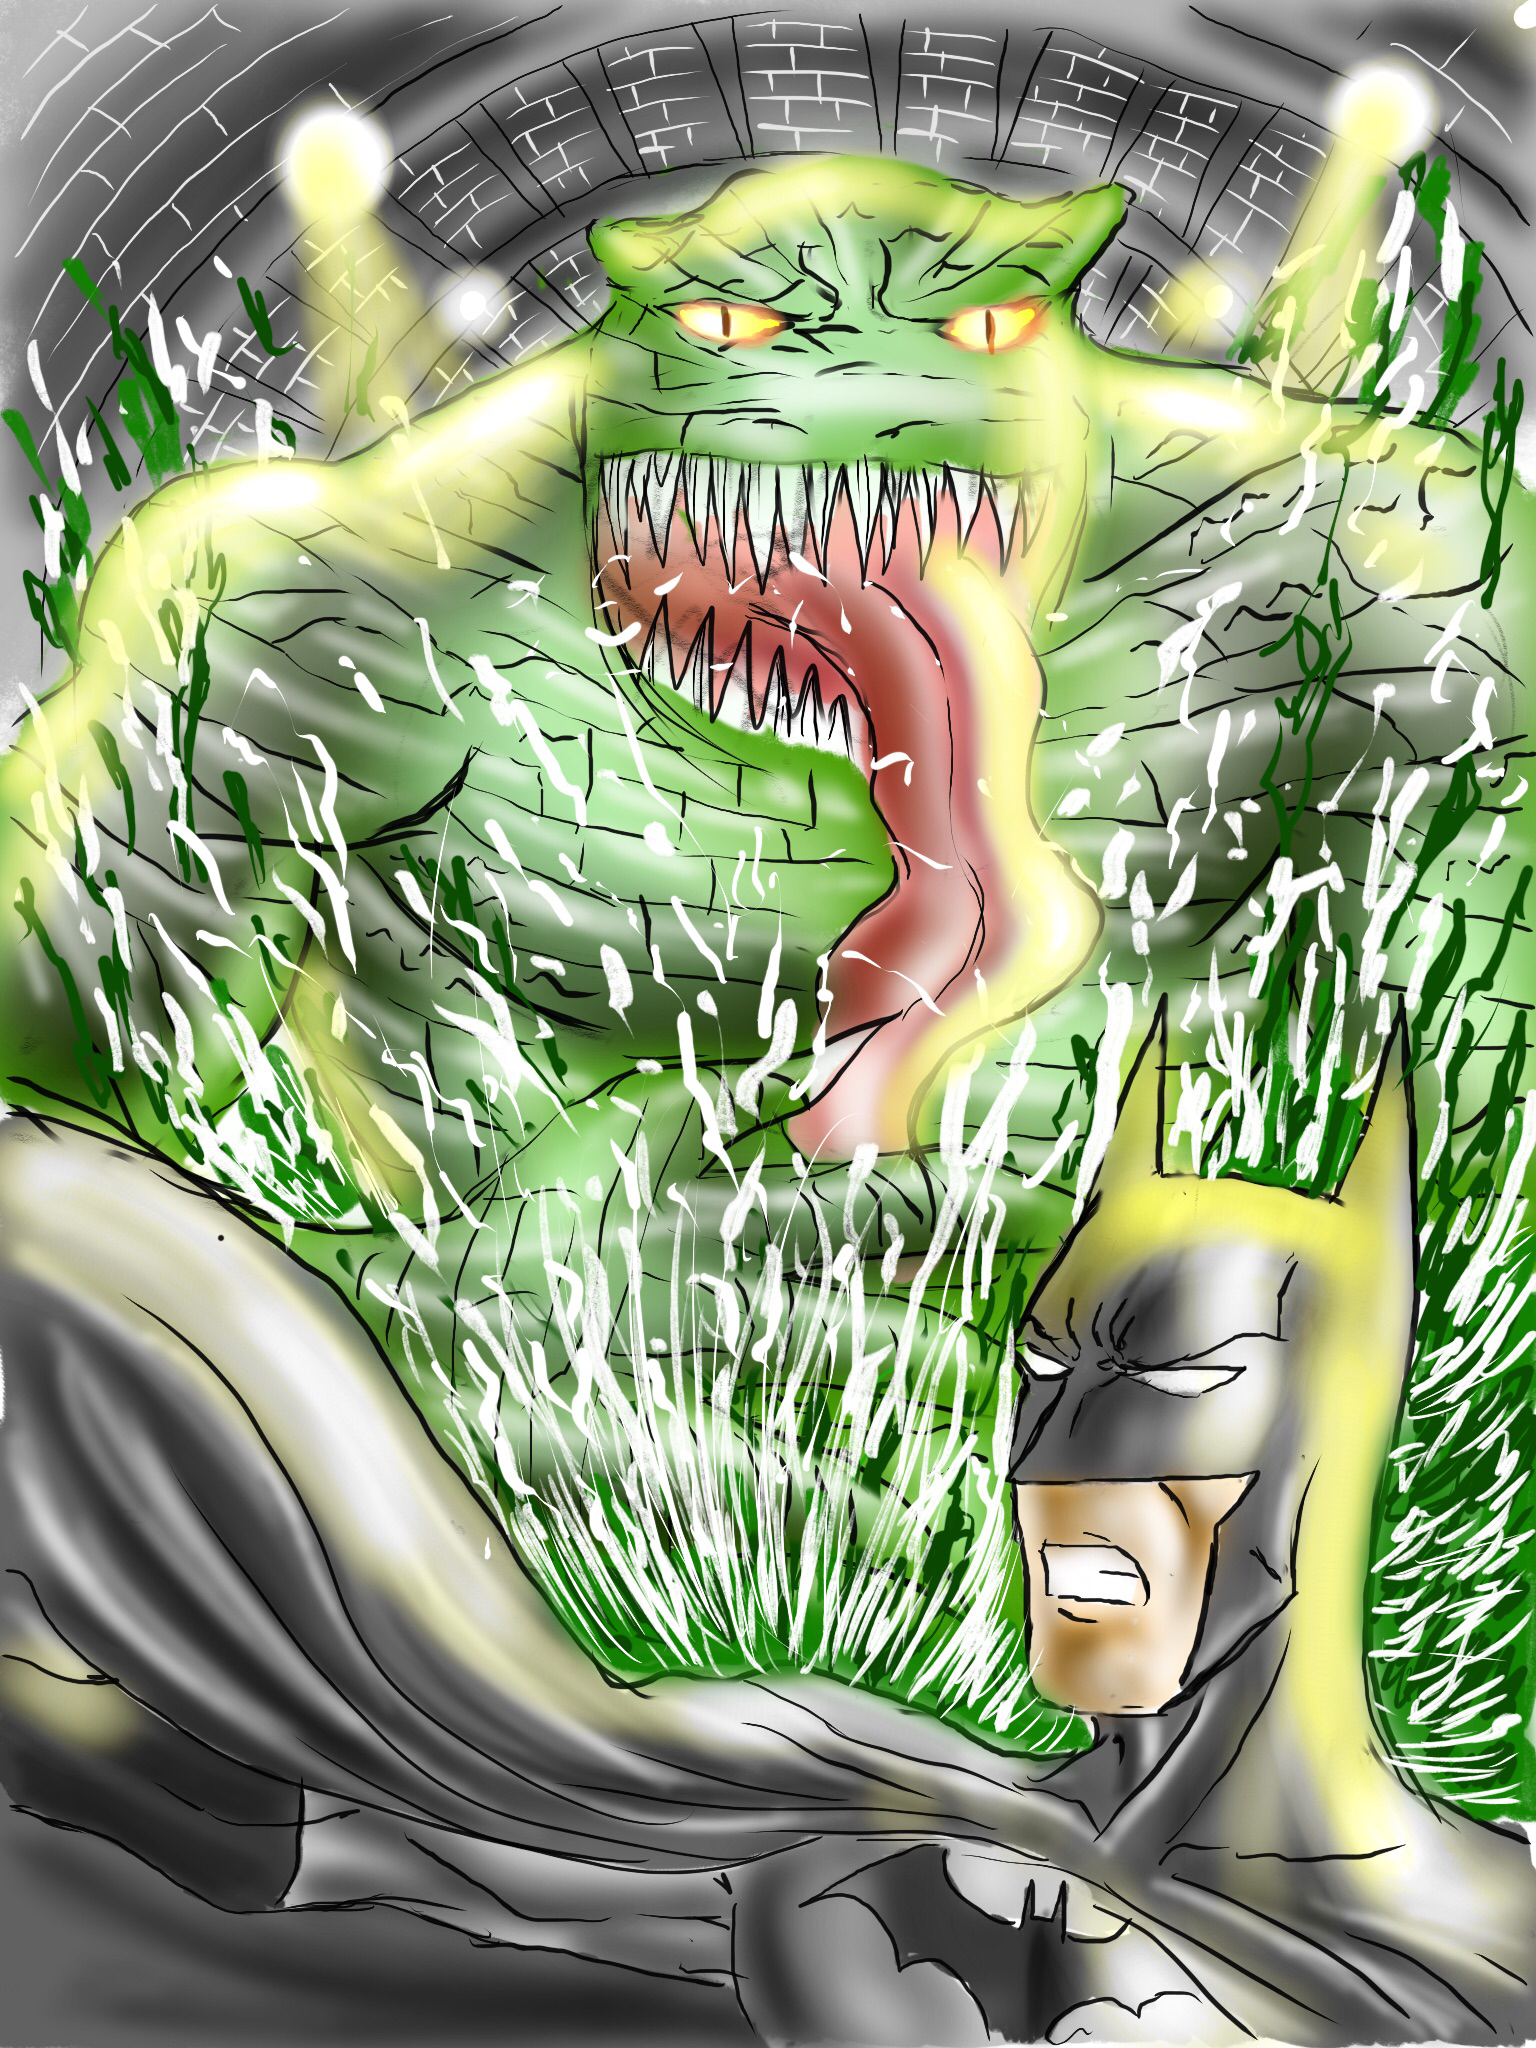 Killer croc vs batman